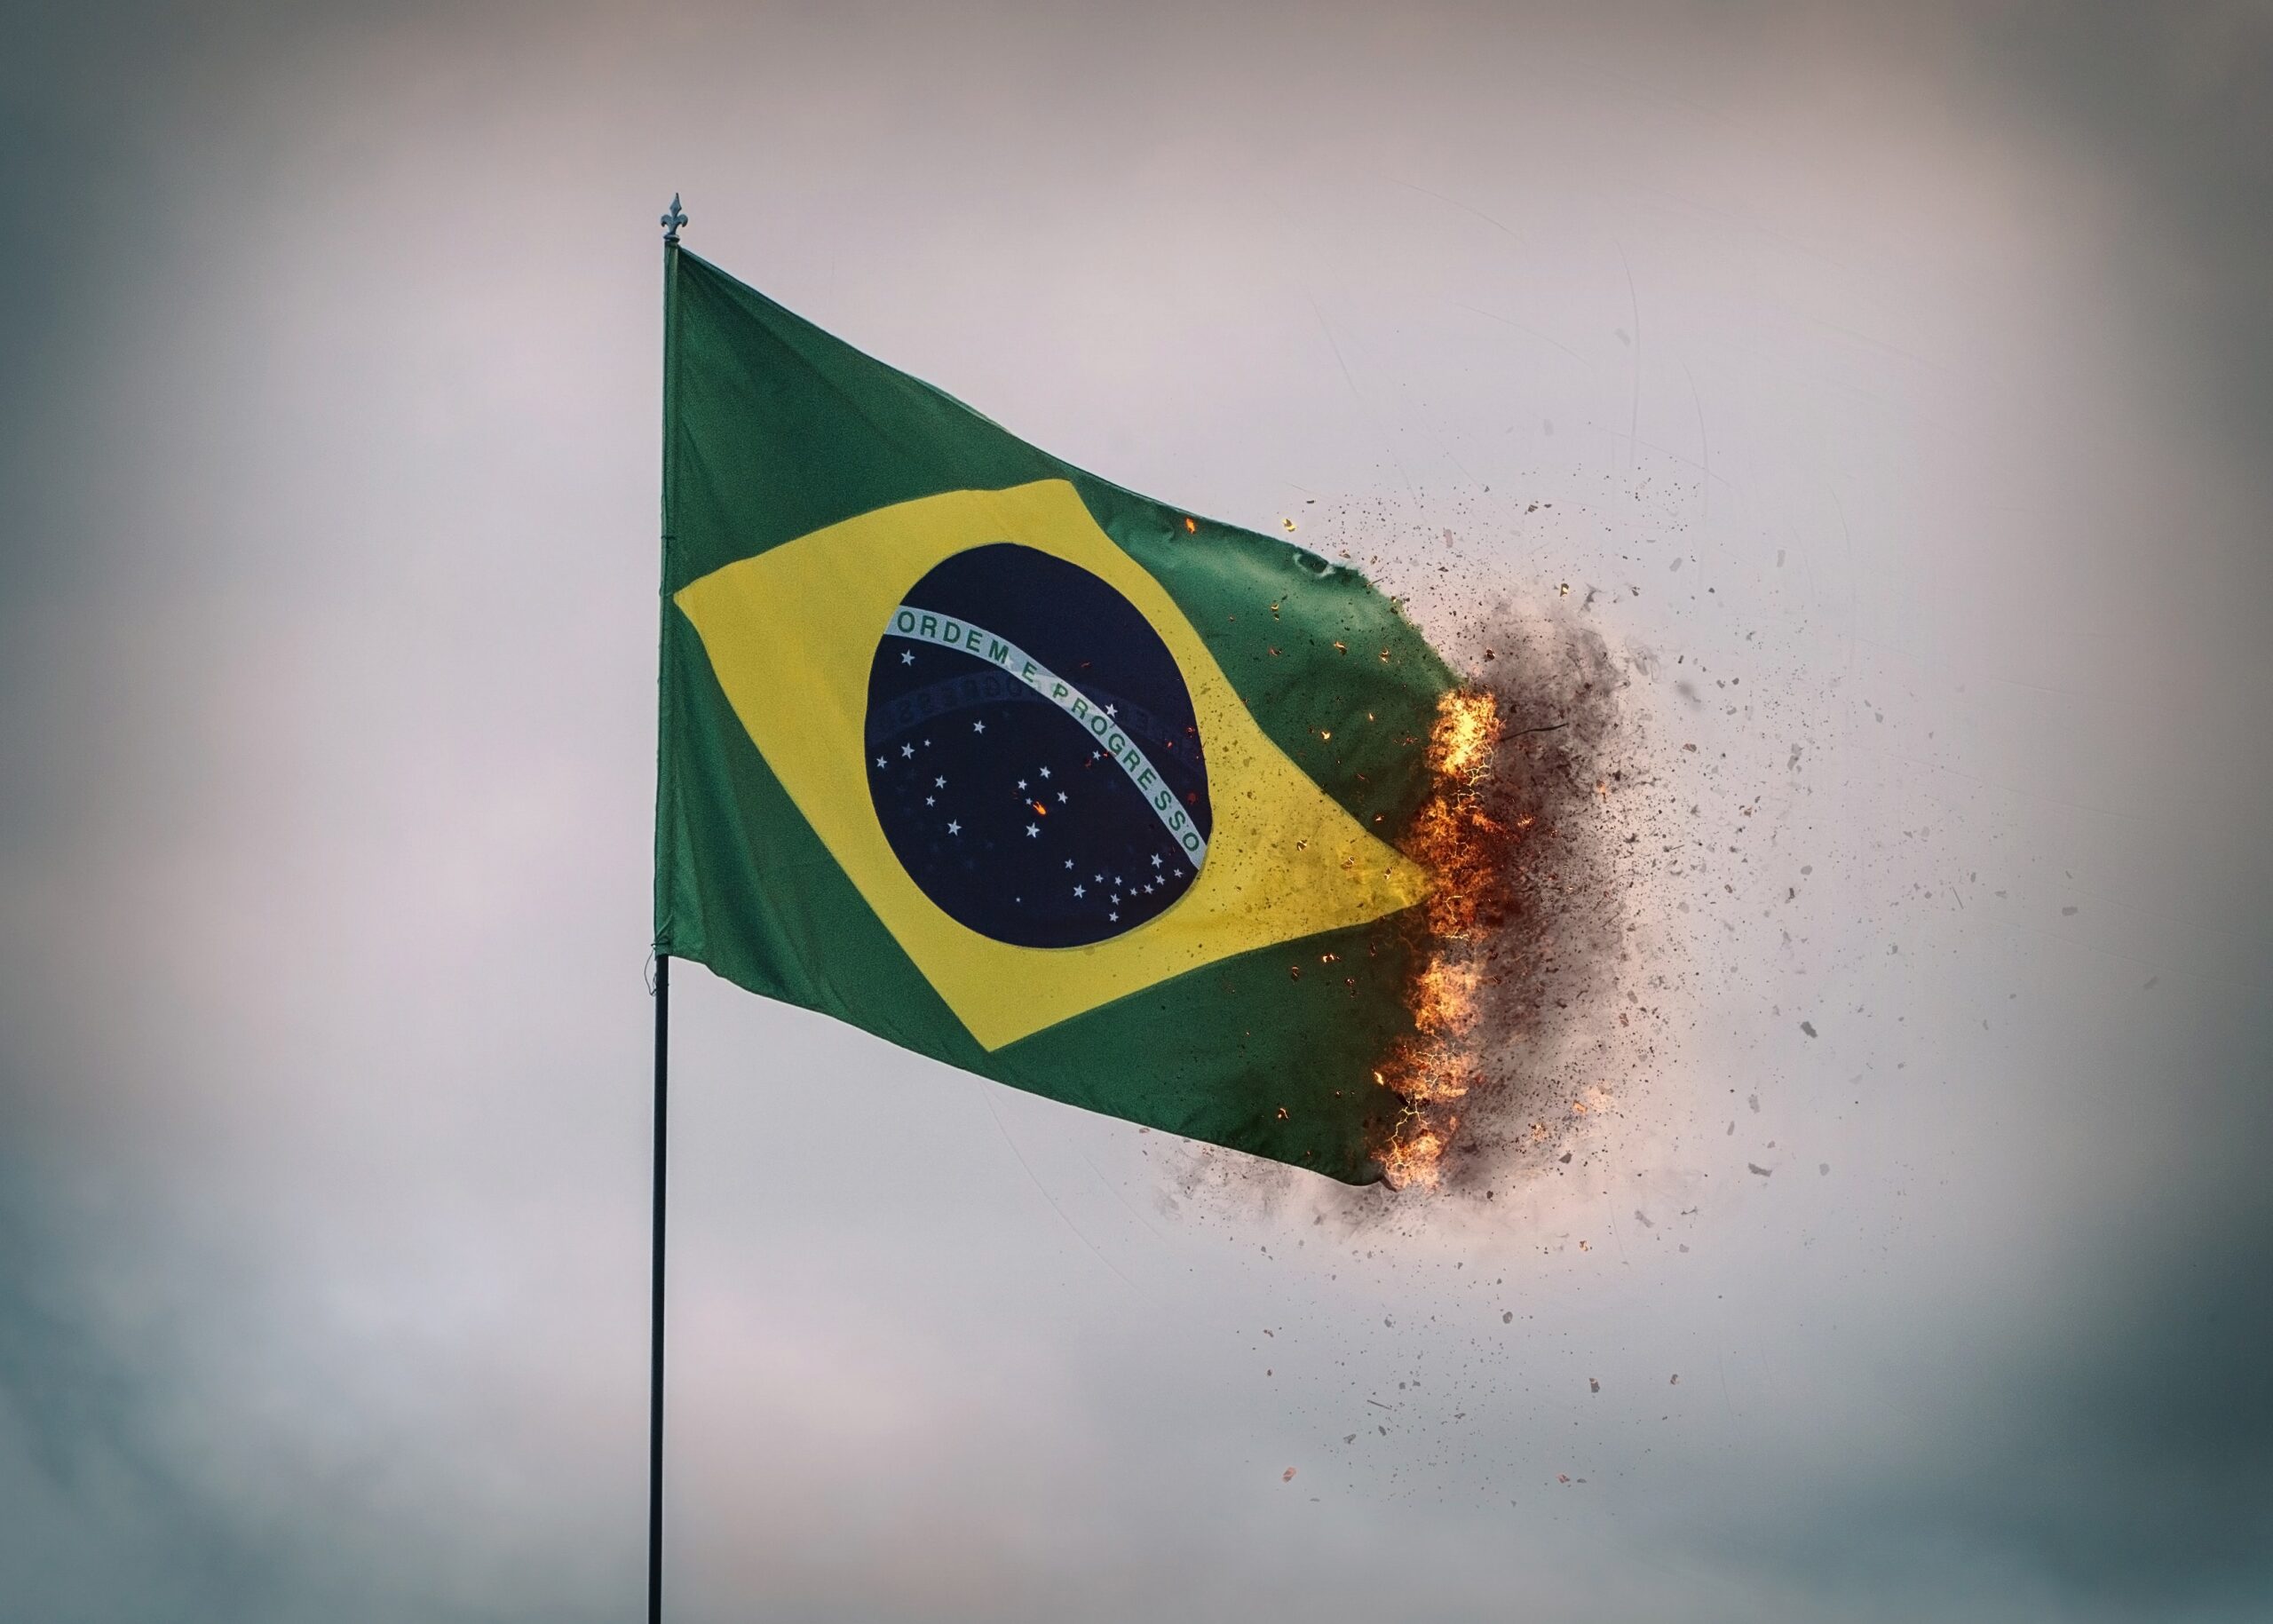 Brazil flag burning photo by Brutally Honest